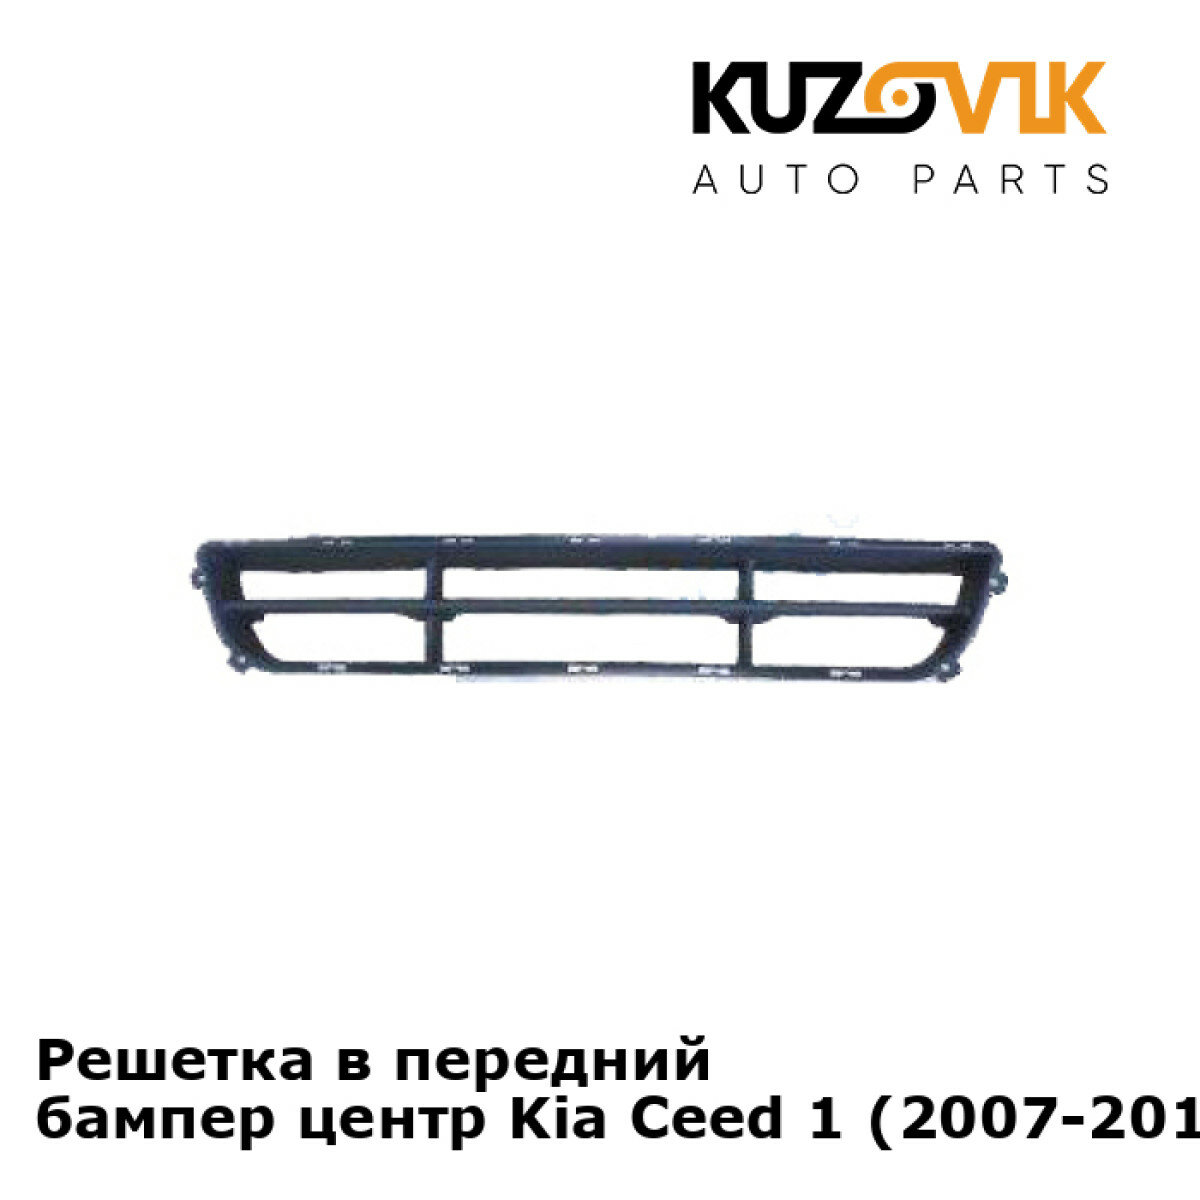 Решетка в передний бампер центр Kia Ceed 1 (2007-2011)